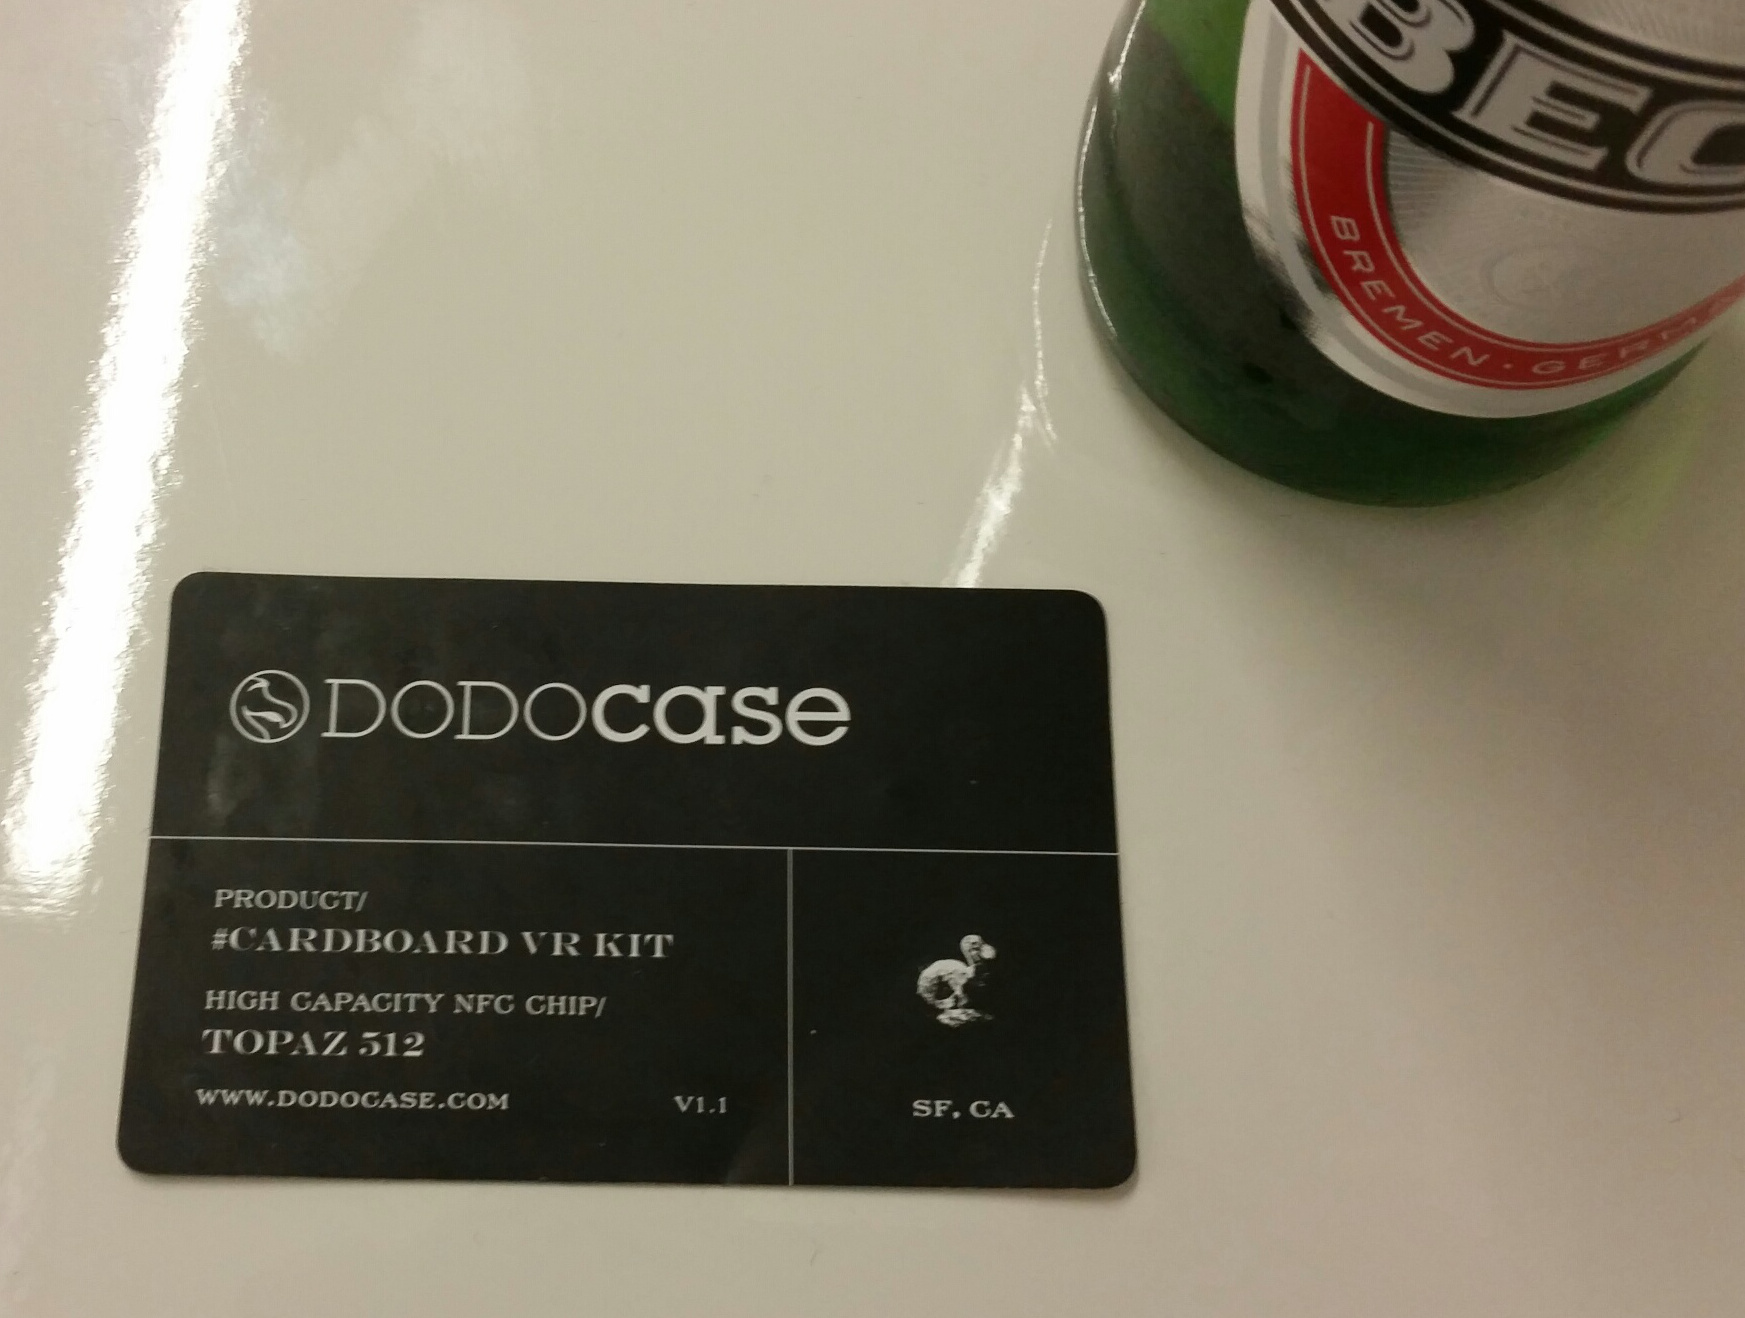 Dodocase NFC card